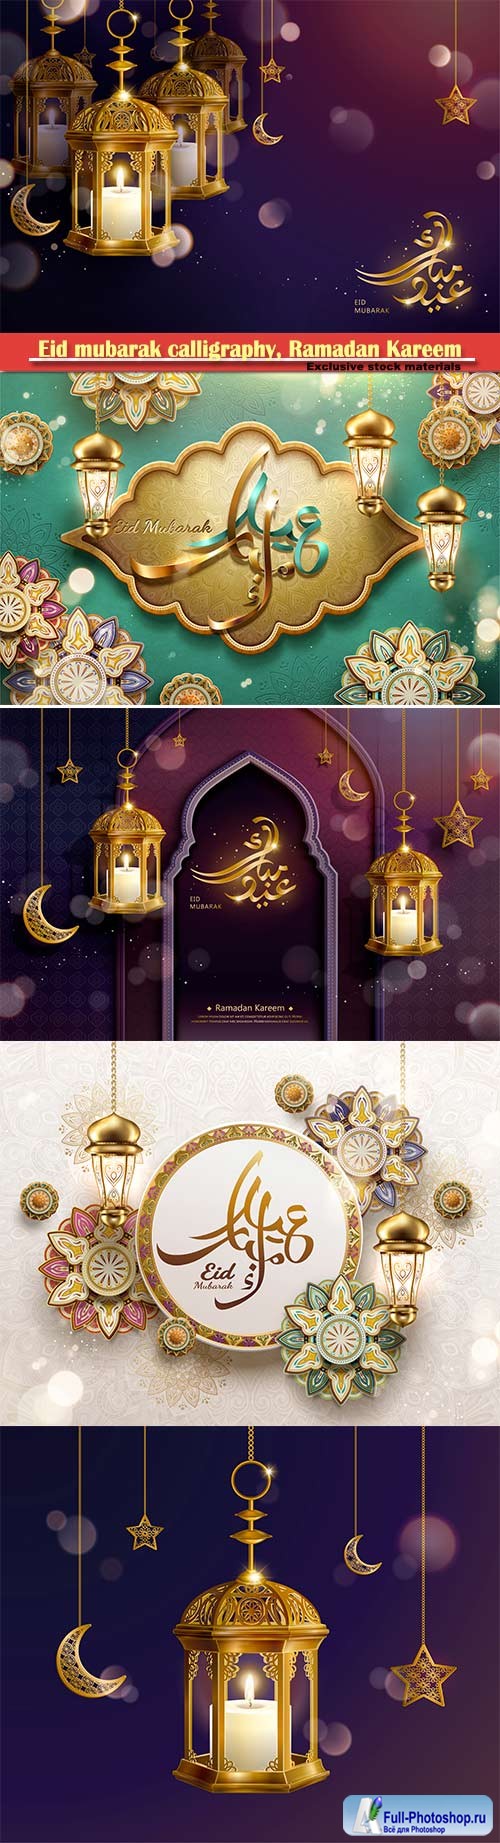 Eid mubarak calligraphy, Ramadan Kareem vector card # 5